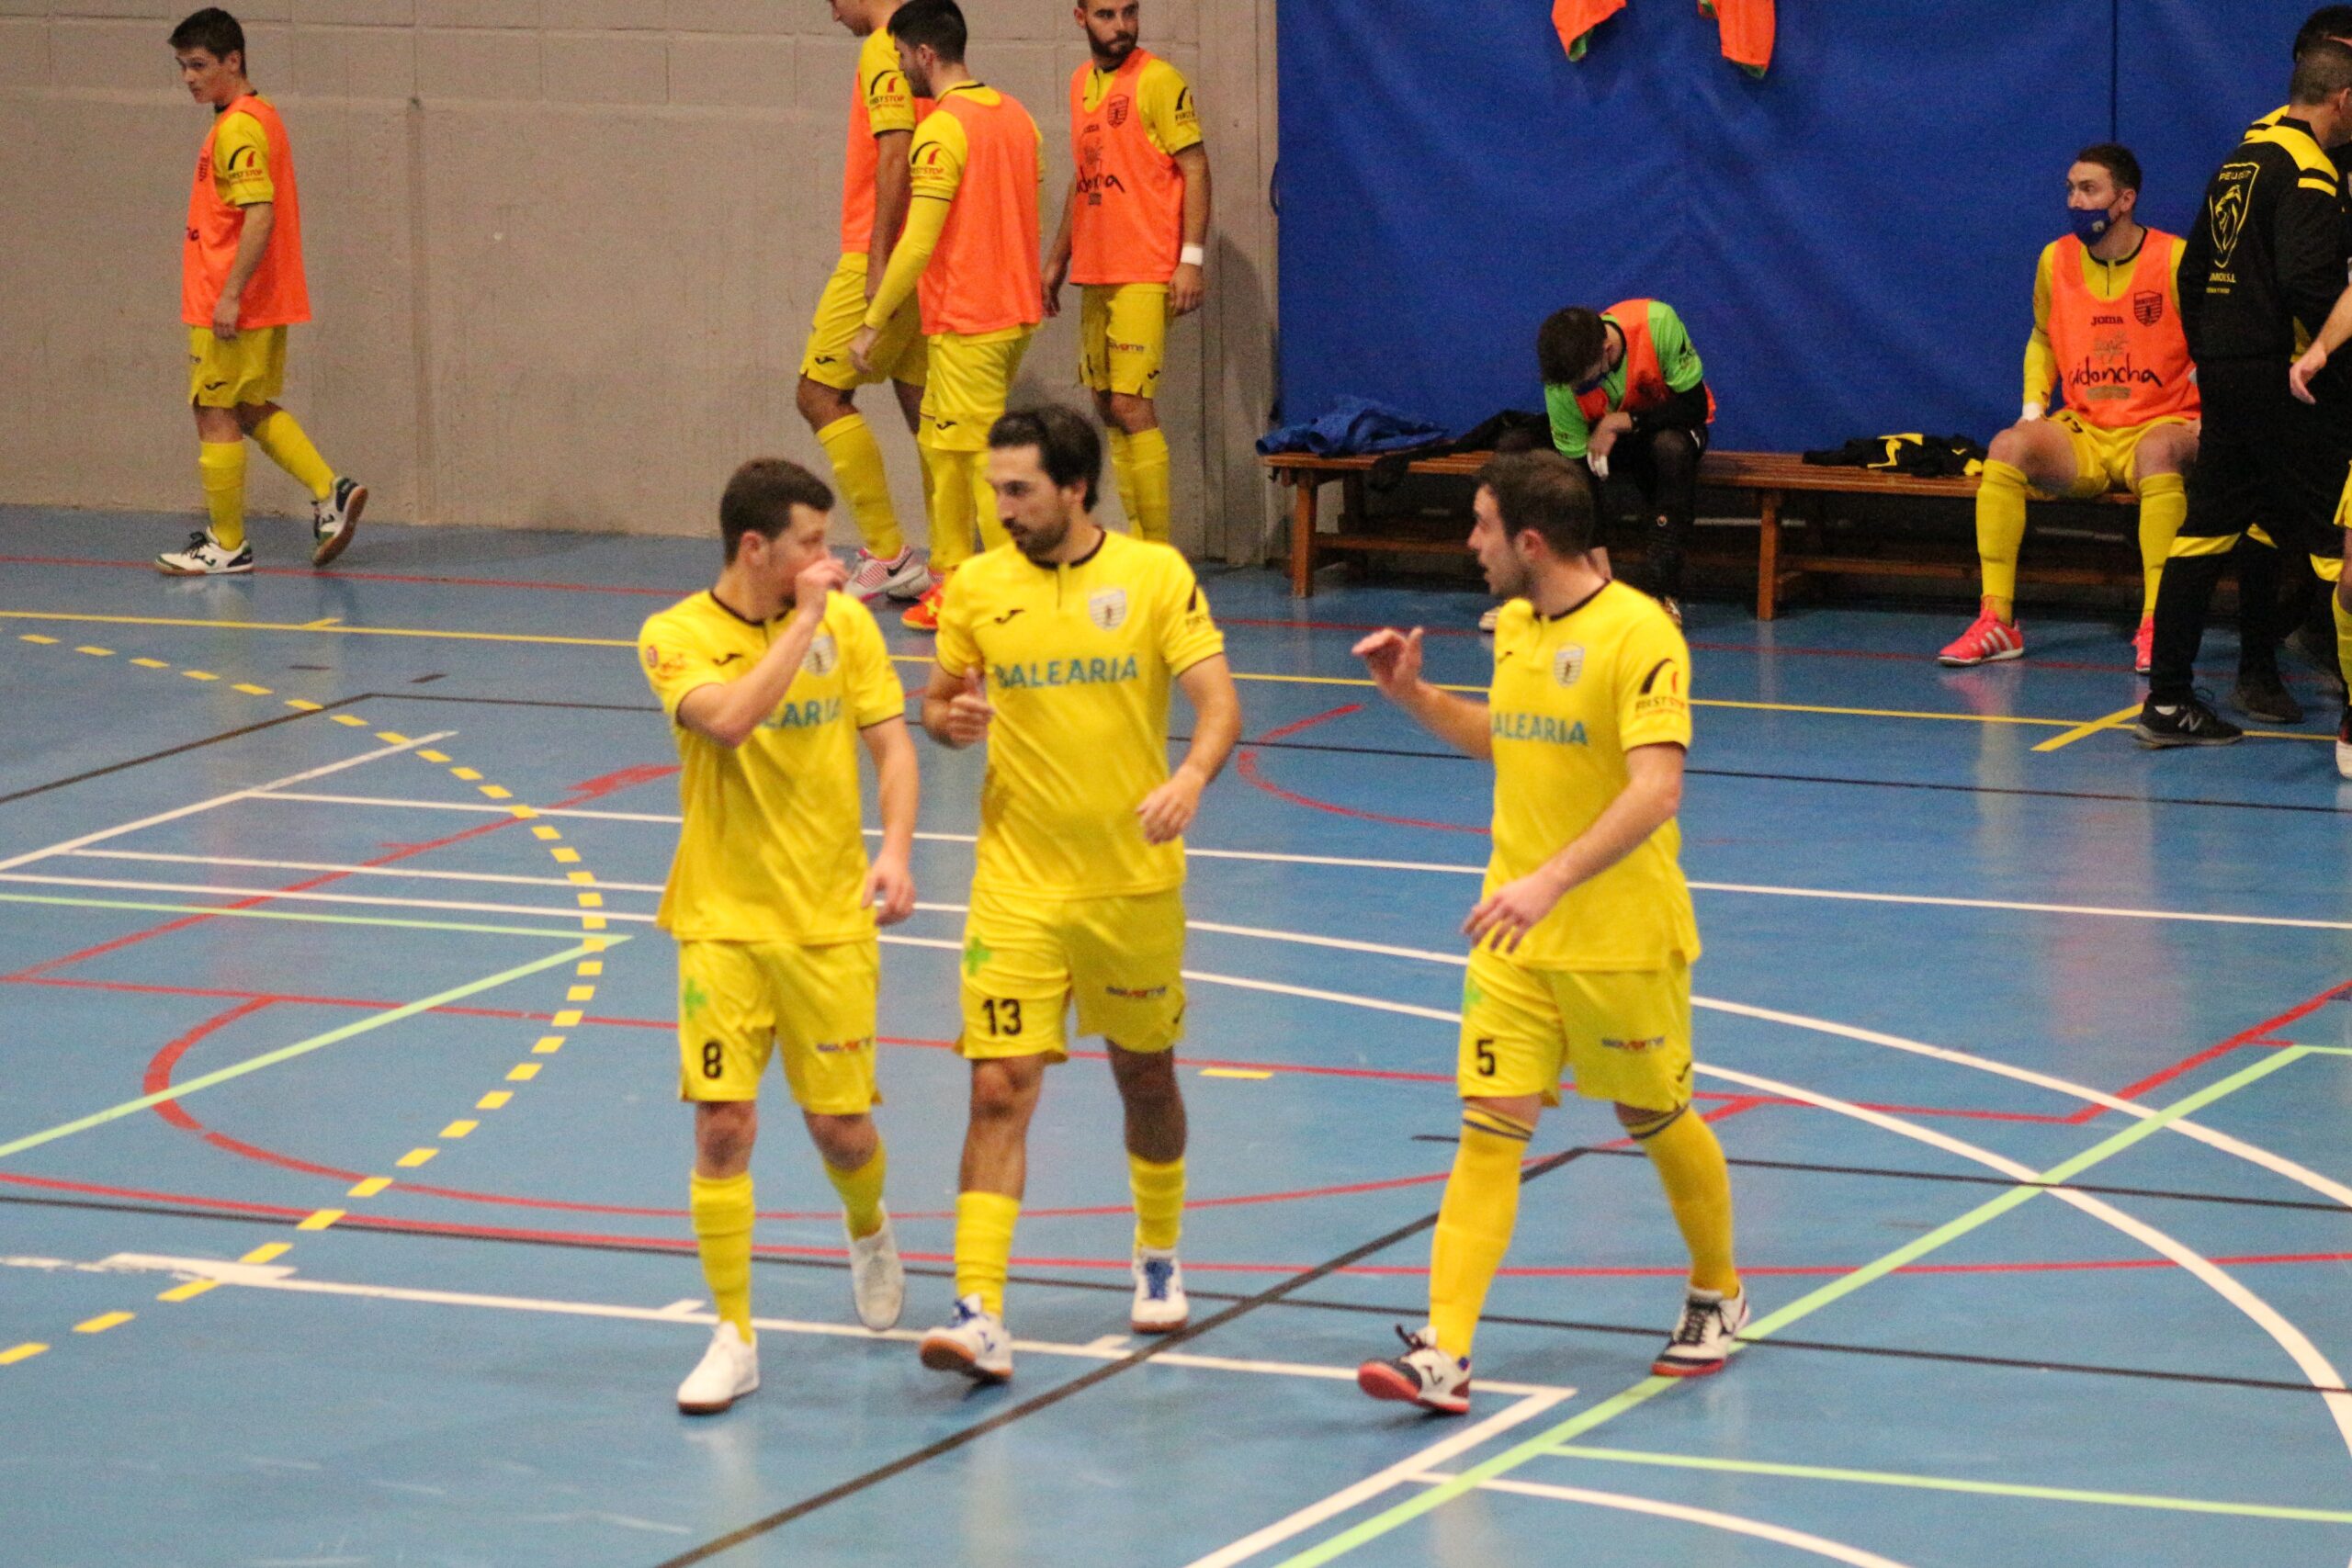 Jugadores del CFS Mar Dénia durante el partido